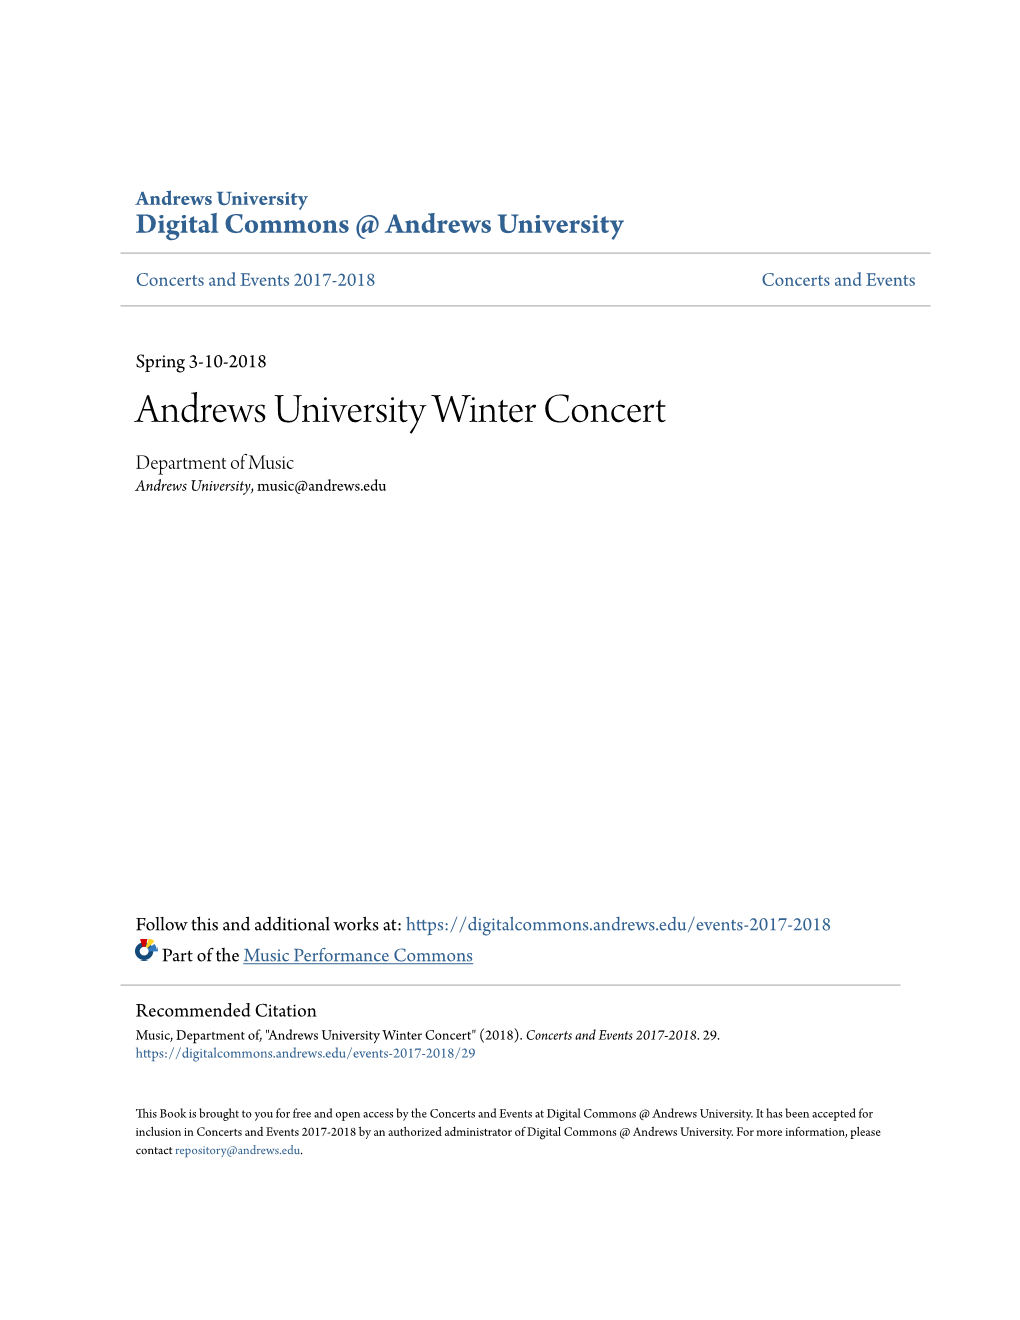 Andrews University Winter Concert Department of Music Andrews University, Music@Andrews.Edu